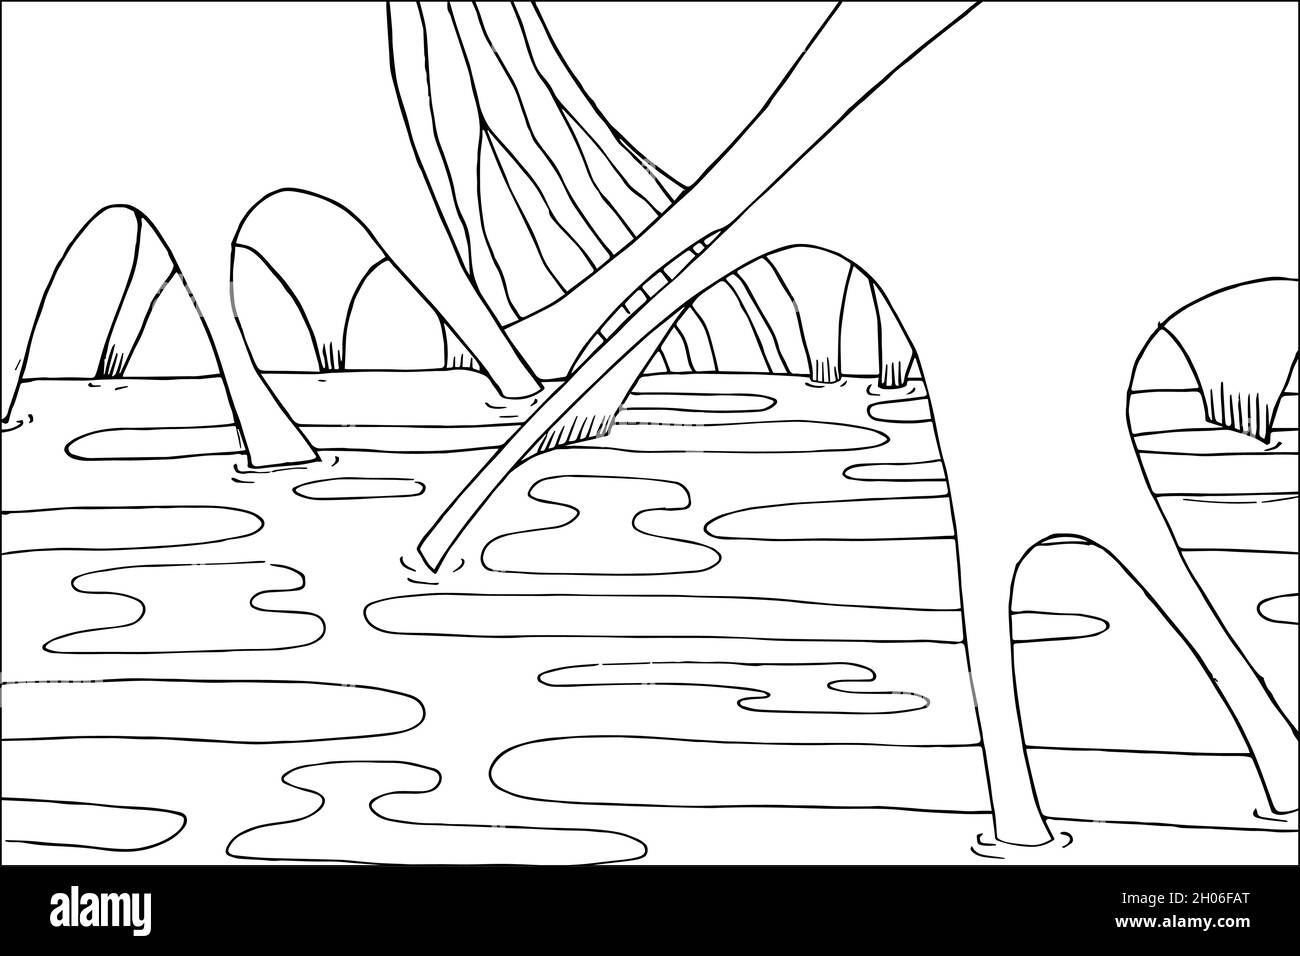 Doodle außerirdische Fantasy-Landschaft mit großen Krater Malseite für Erwachsene. Fantastische psychedelische Grafik. Vektor von Hand gezeichnet einfach flach illustrr Stock Vektor